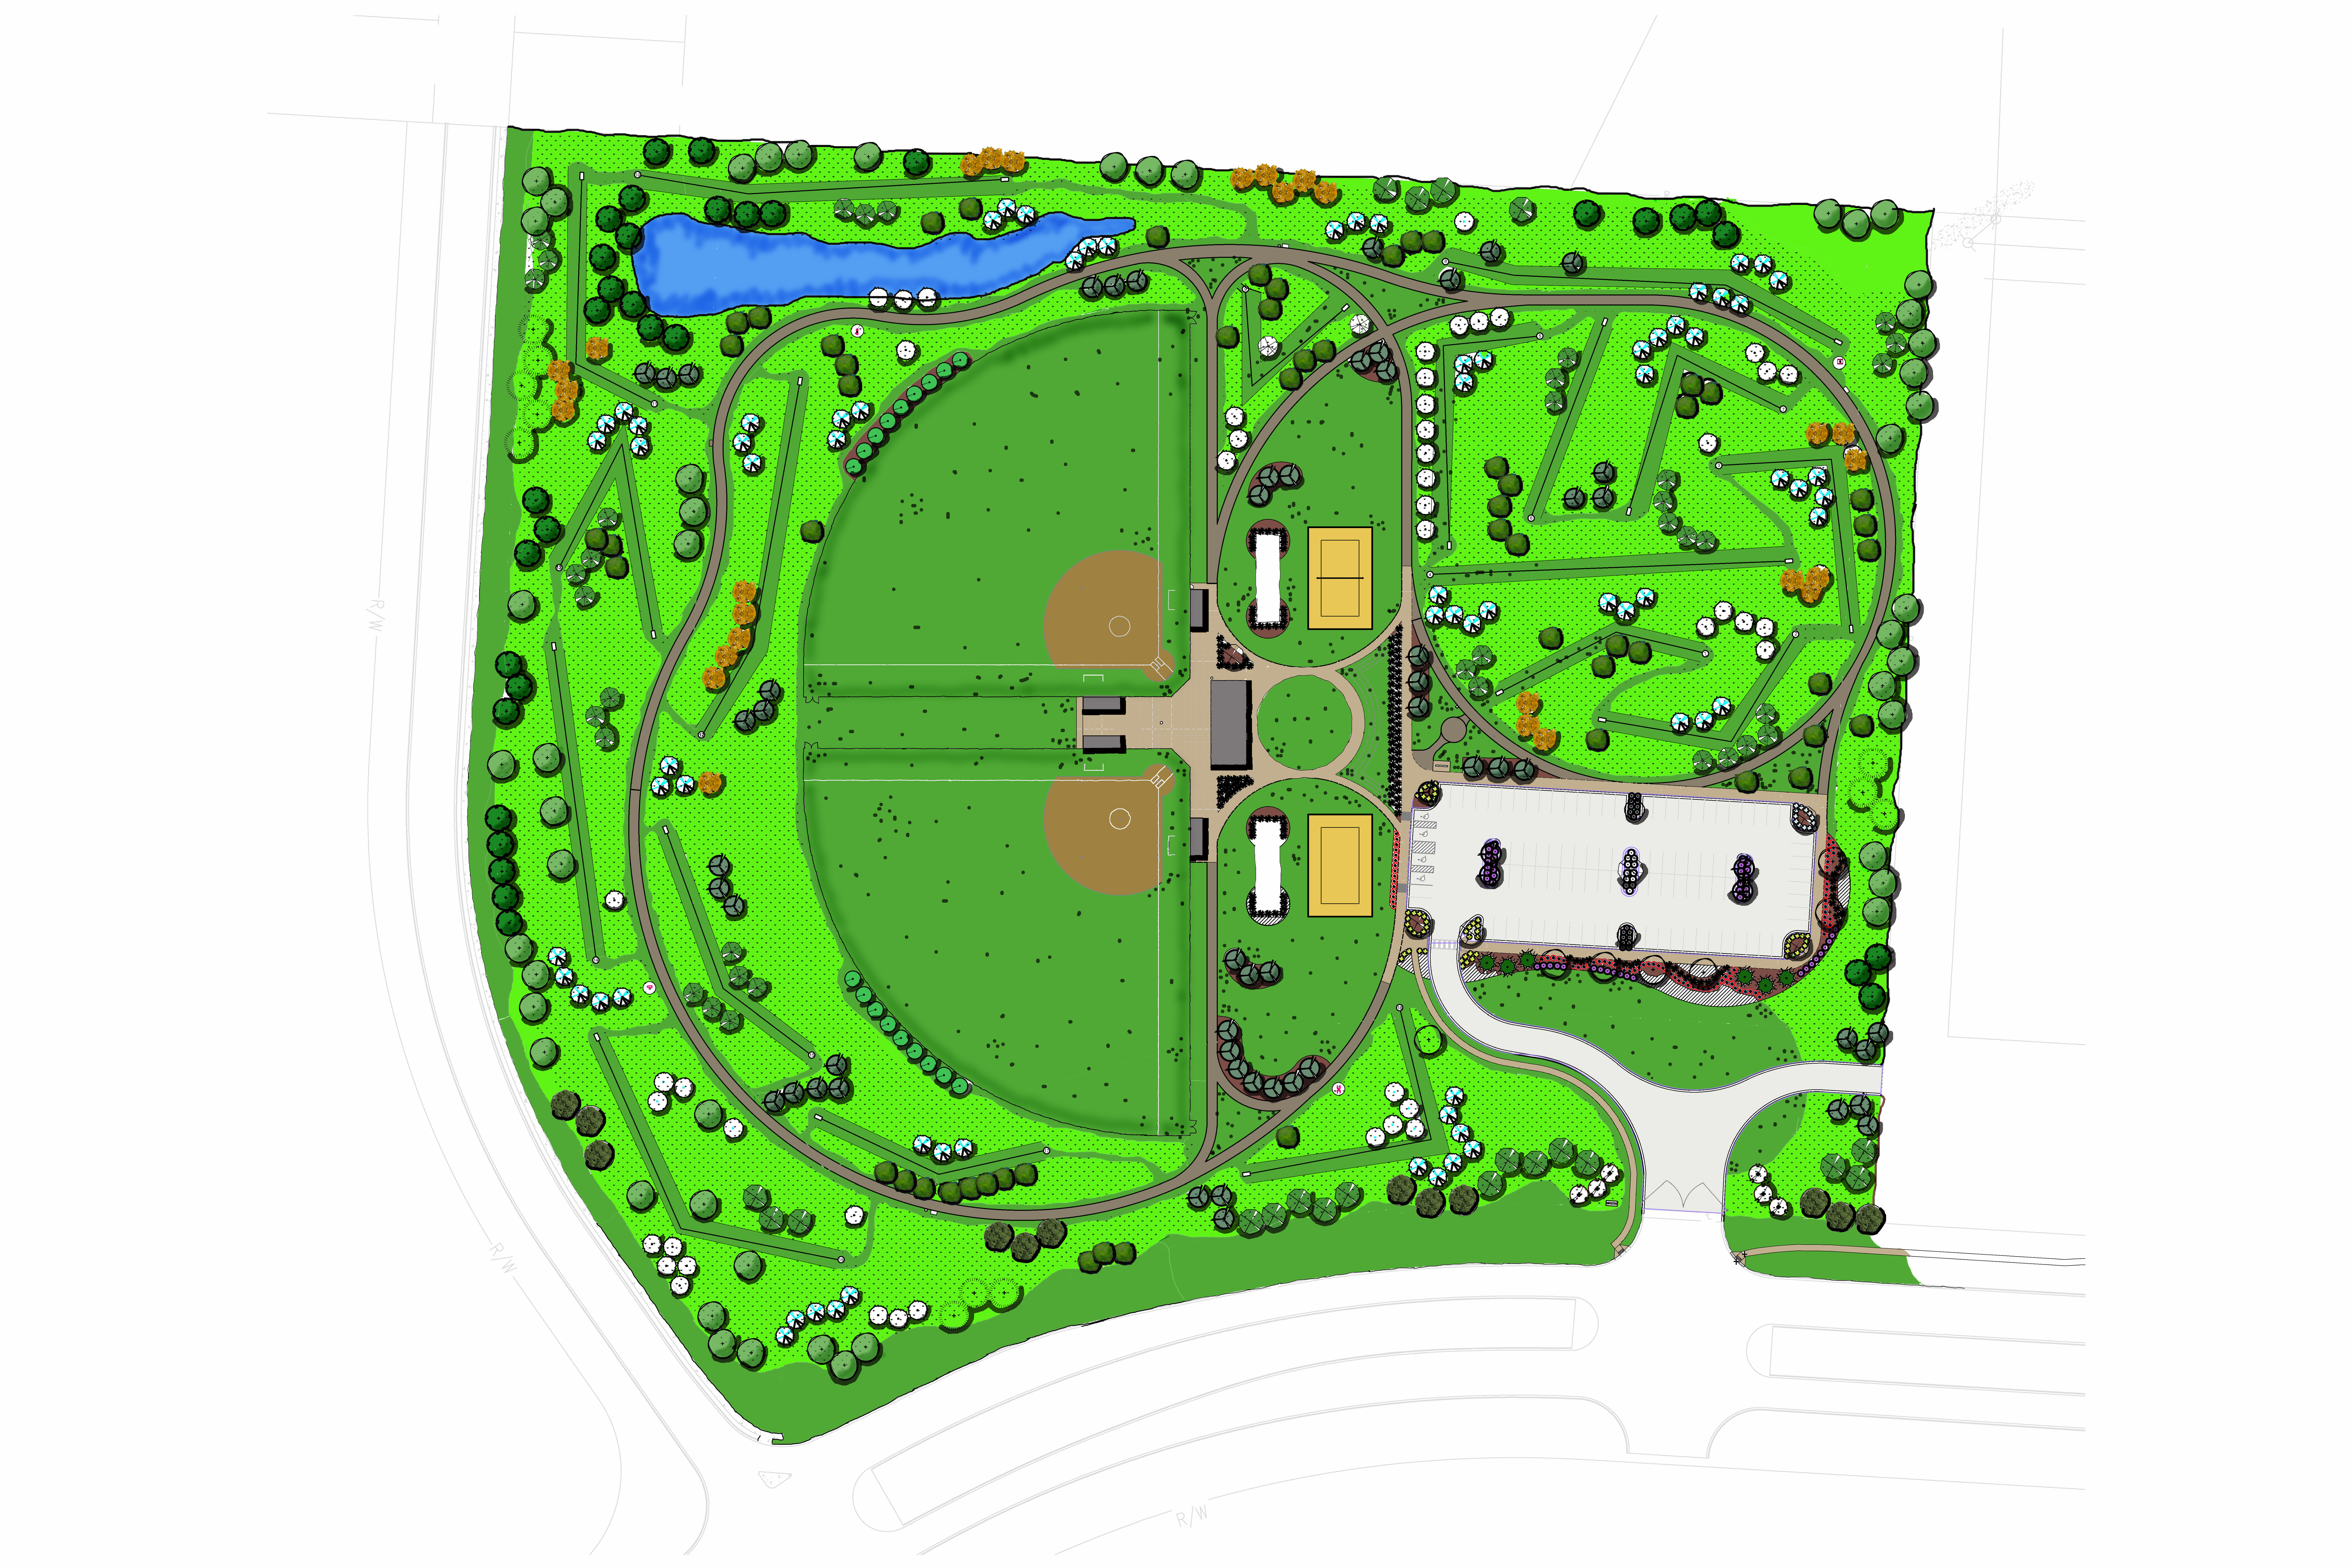 Dynetics park rendering aerial view